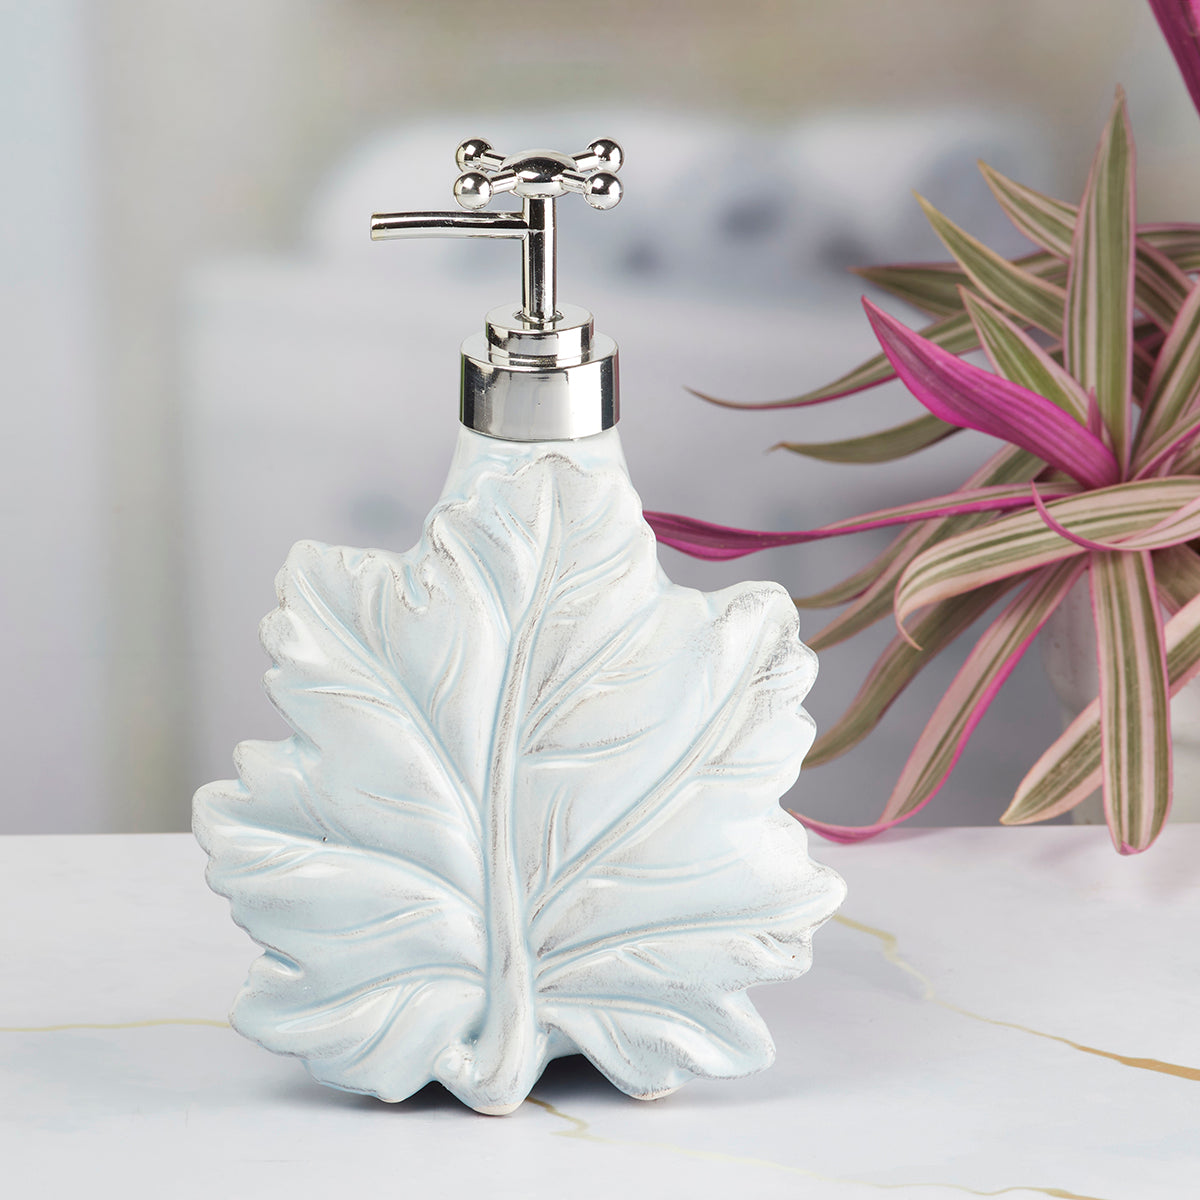 Kookee Ceramic Soap Dispenser for Bathroom handwash, refillable pump bottle for Kitchen hand wash basin, Set of 1, Blue (8635)